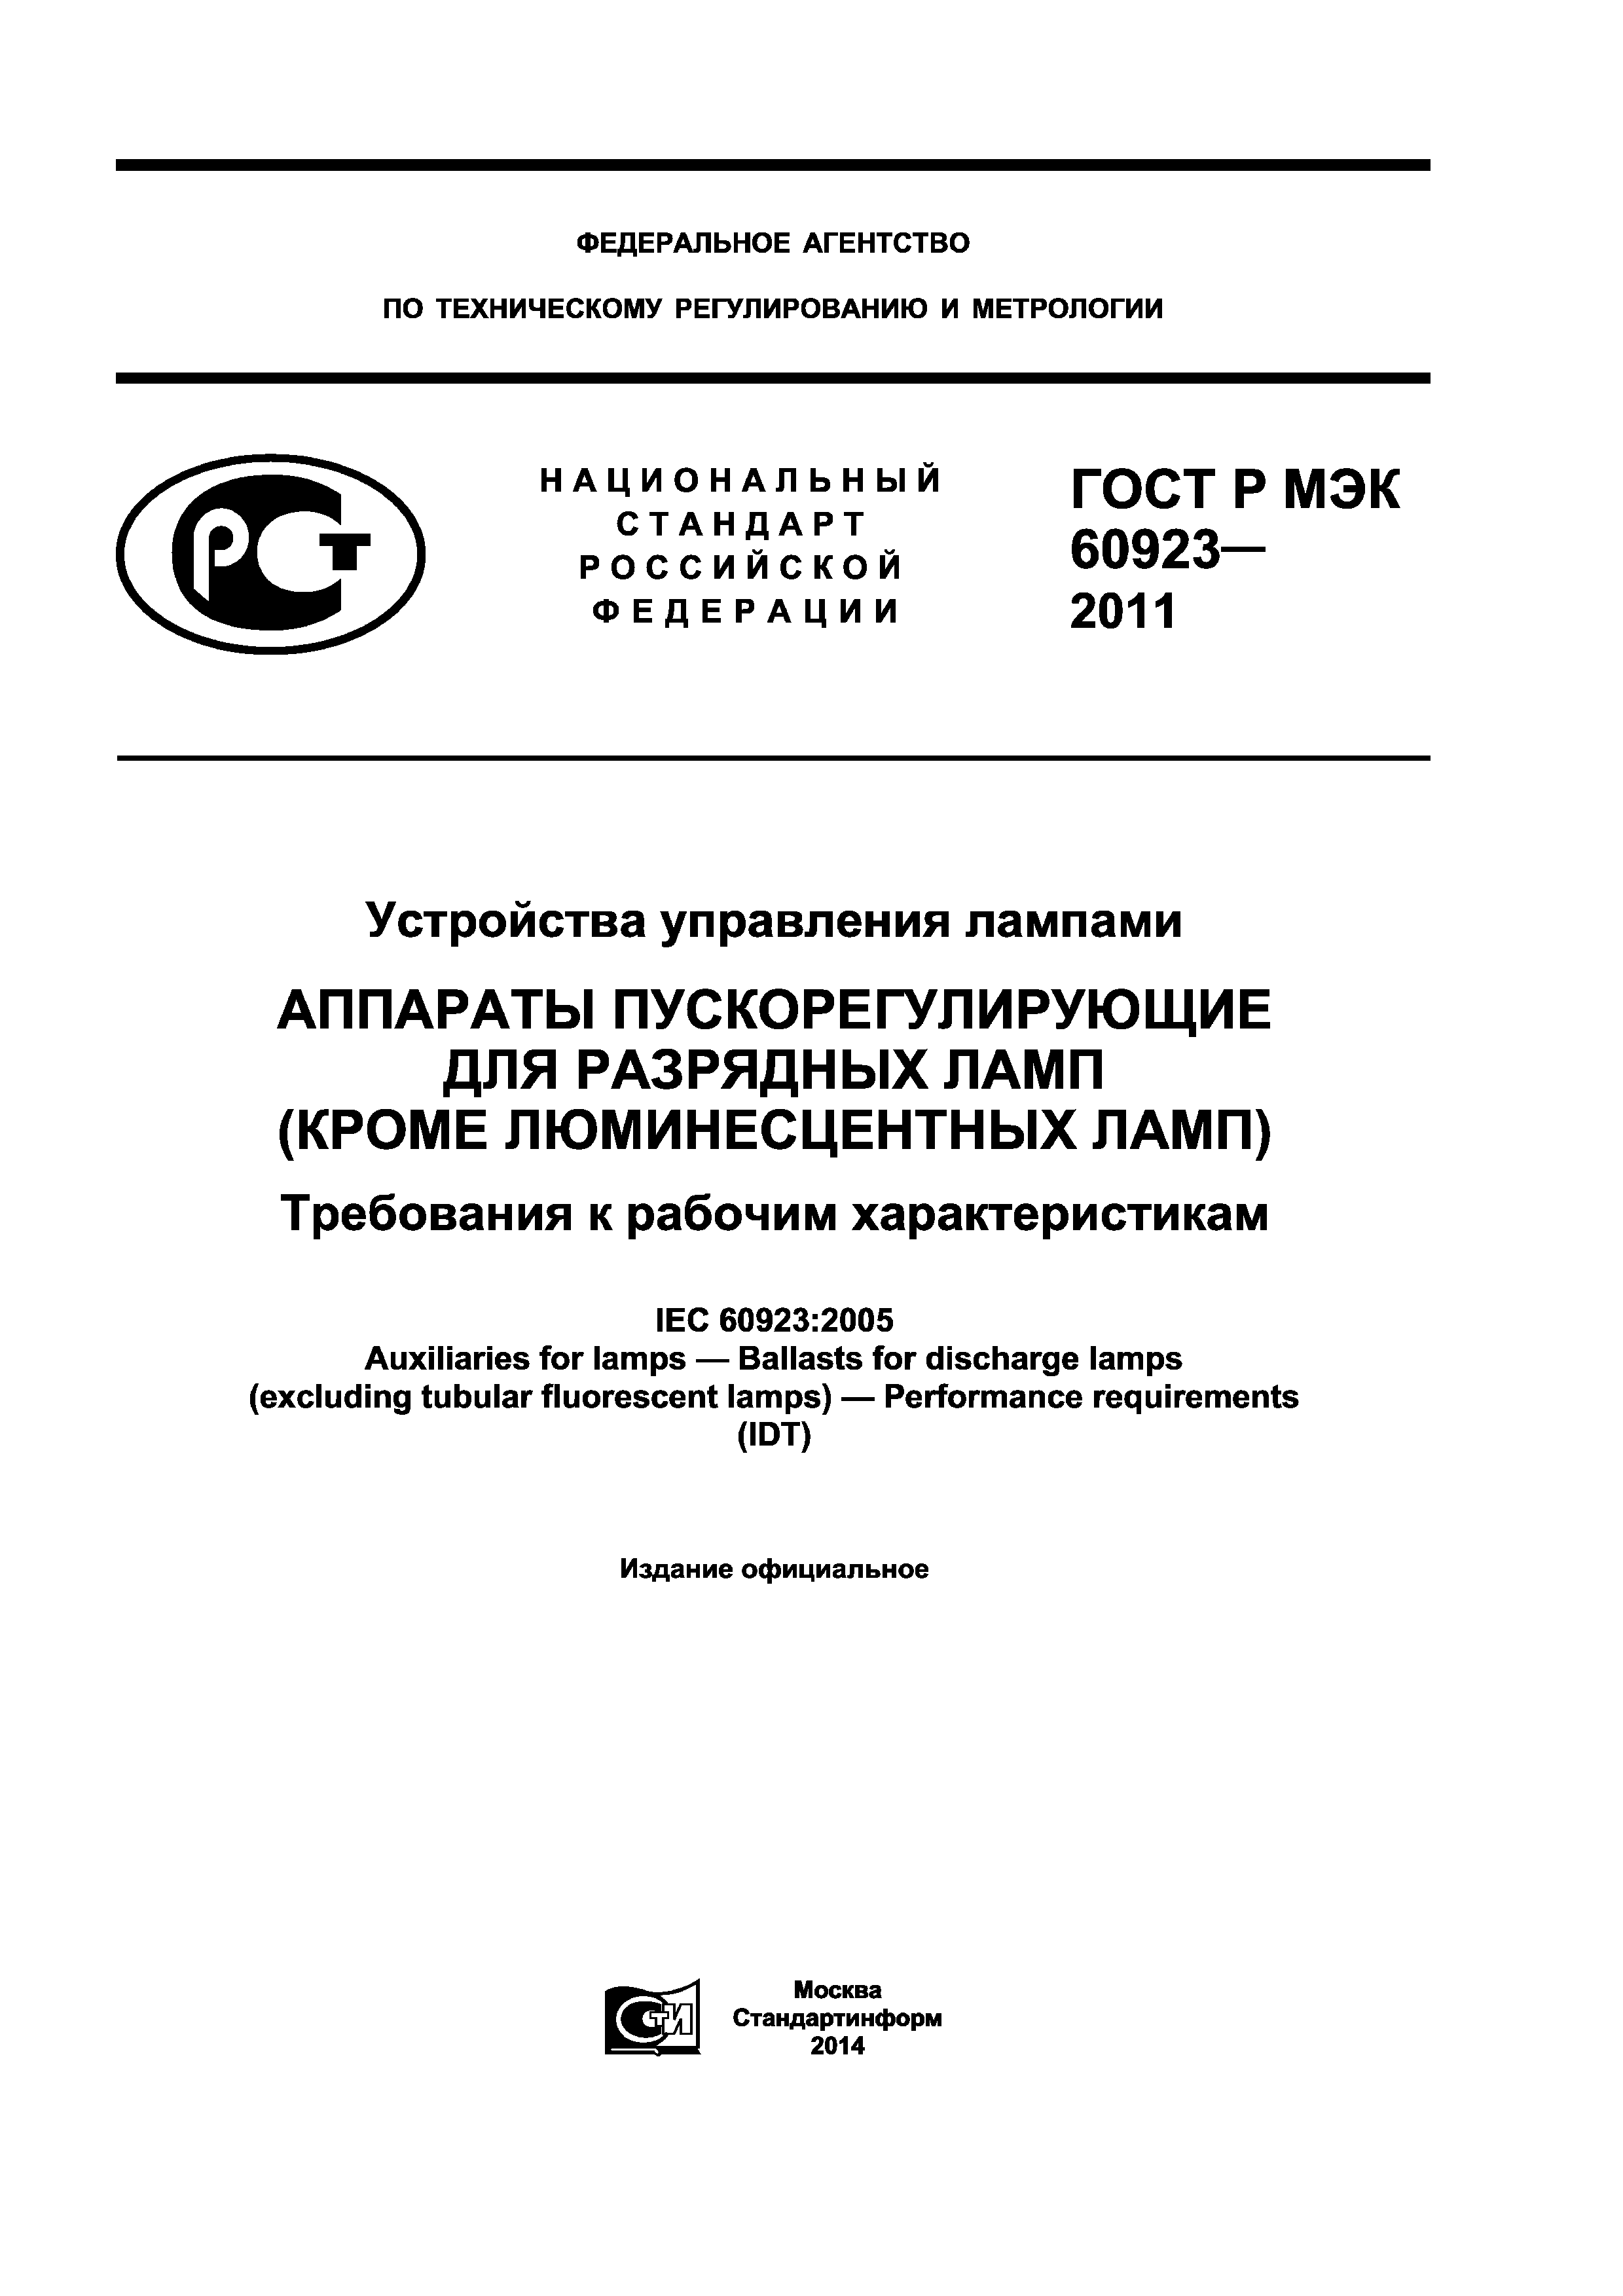 ГОСТ Р МЭК 60923-2011